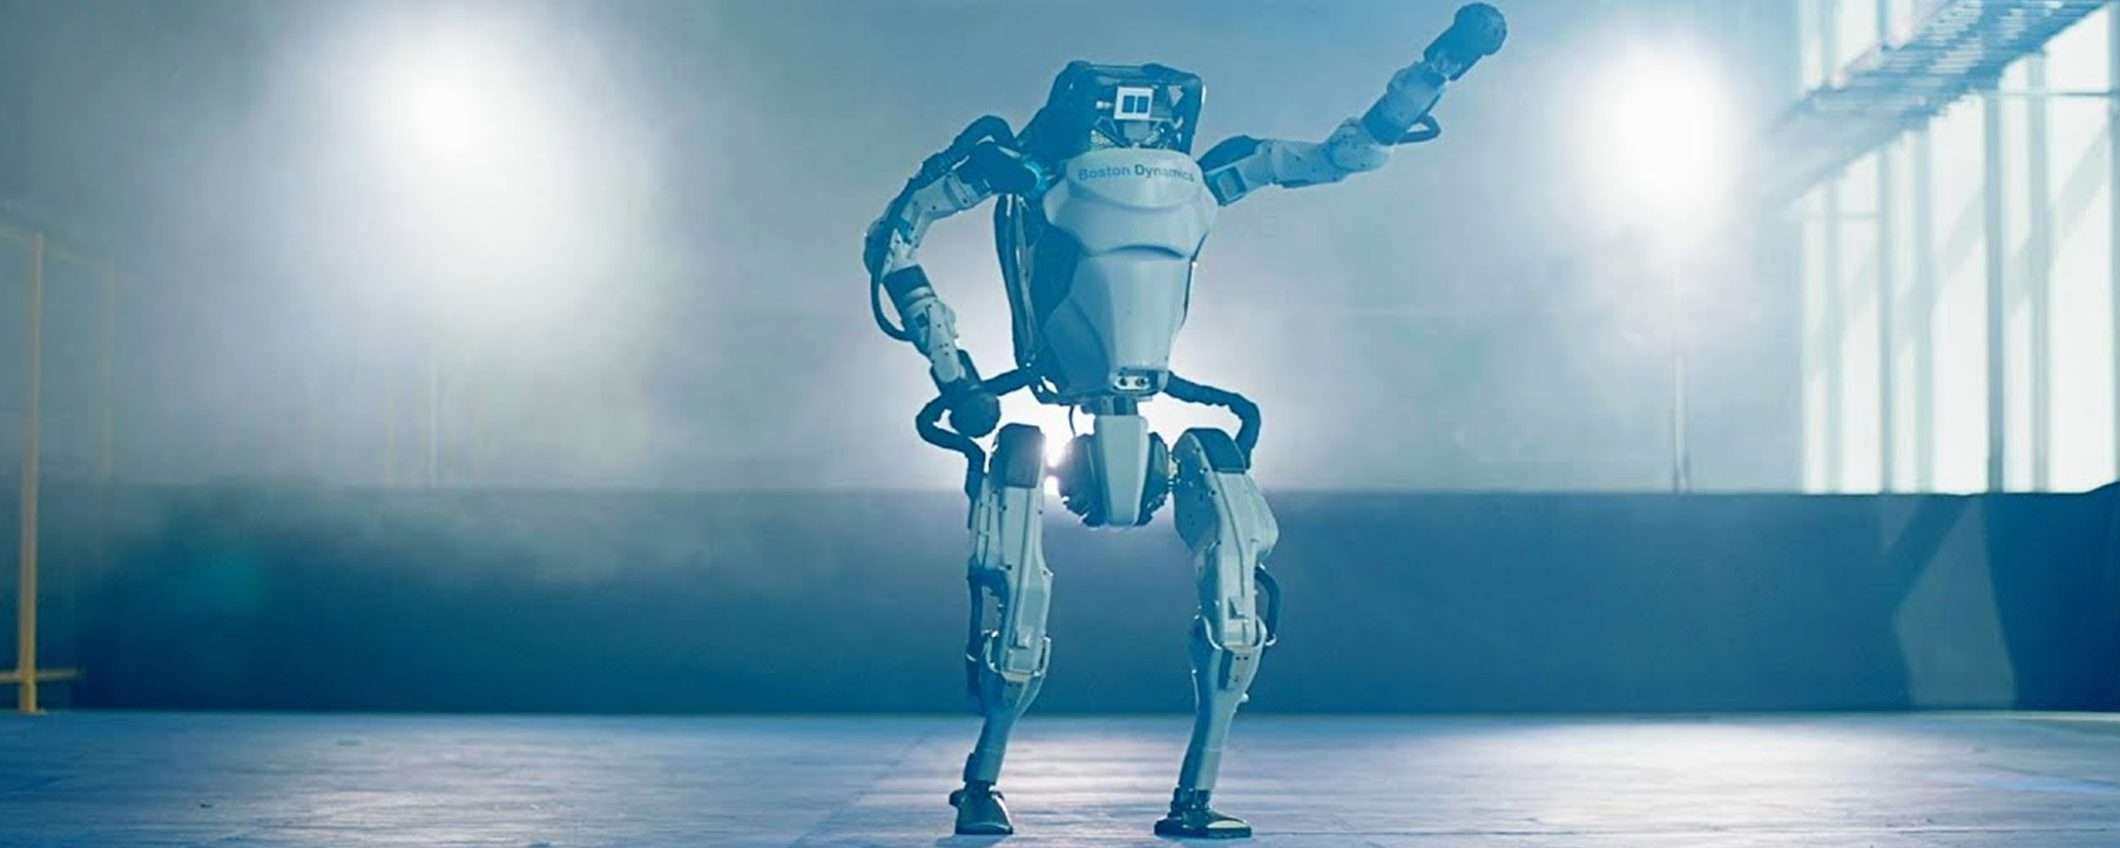 Boston Dynamics e Agility insegnano ai loro robot a cadere bene